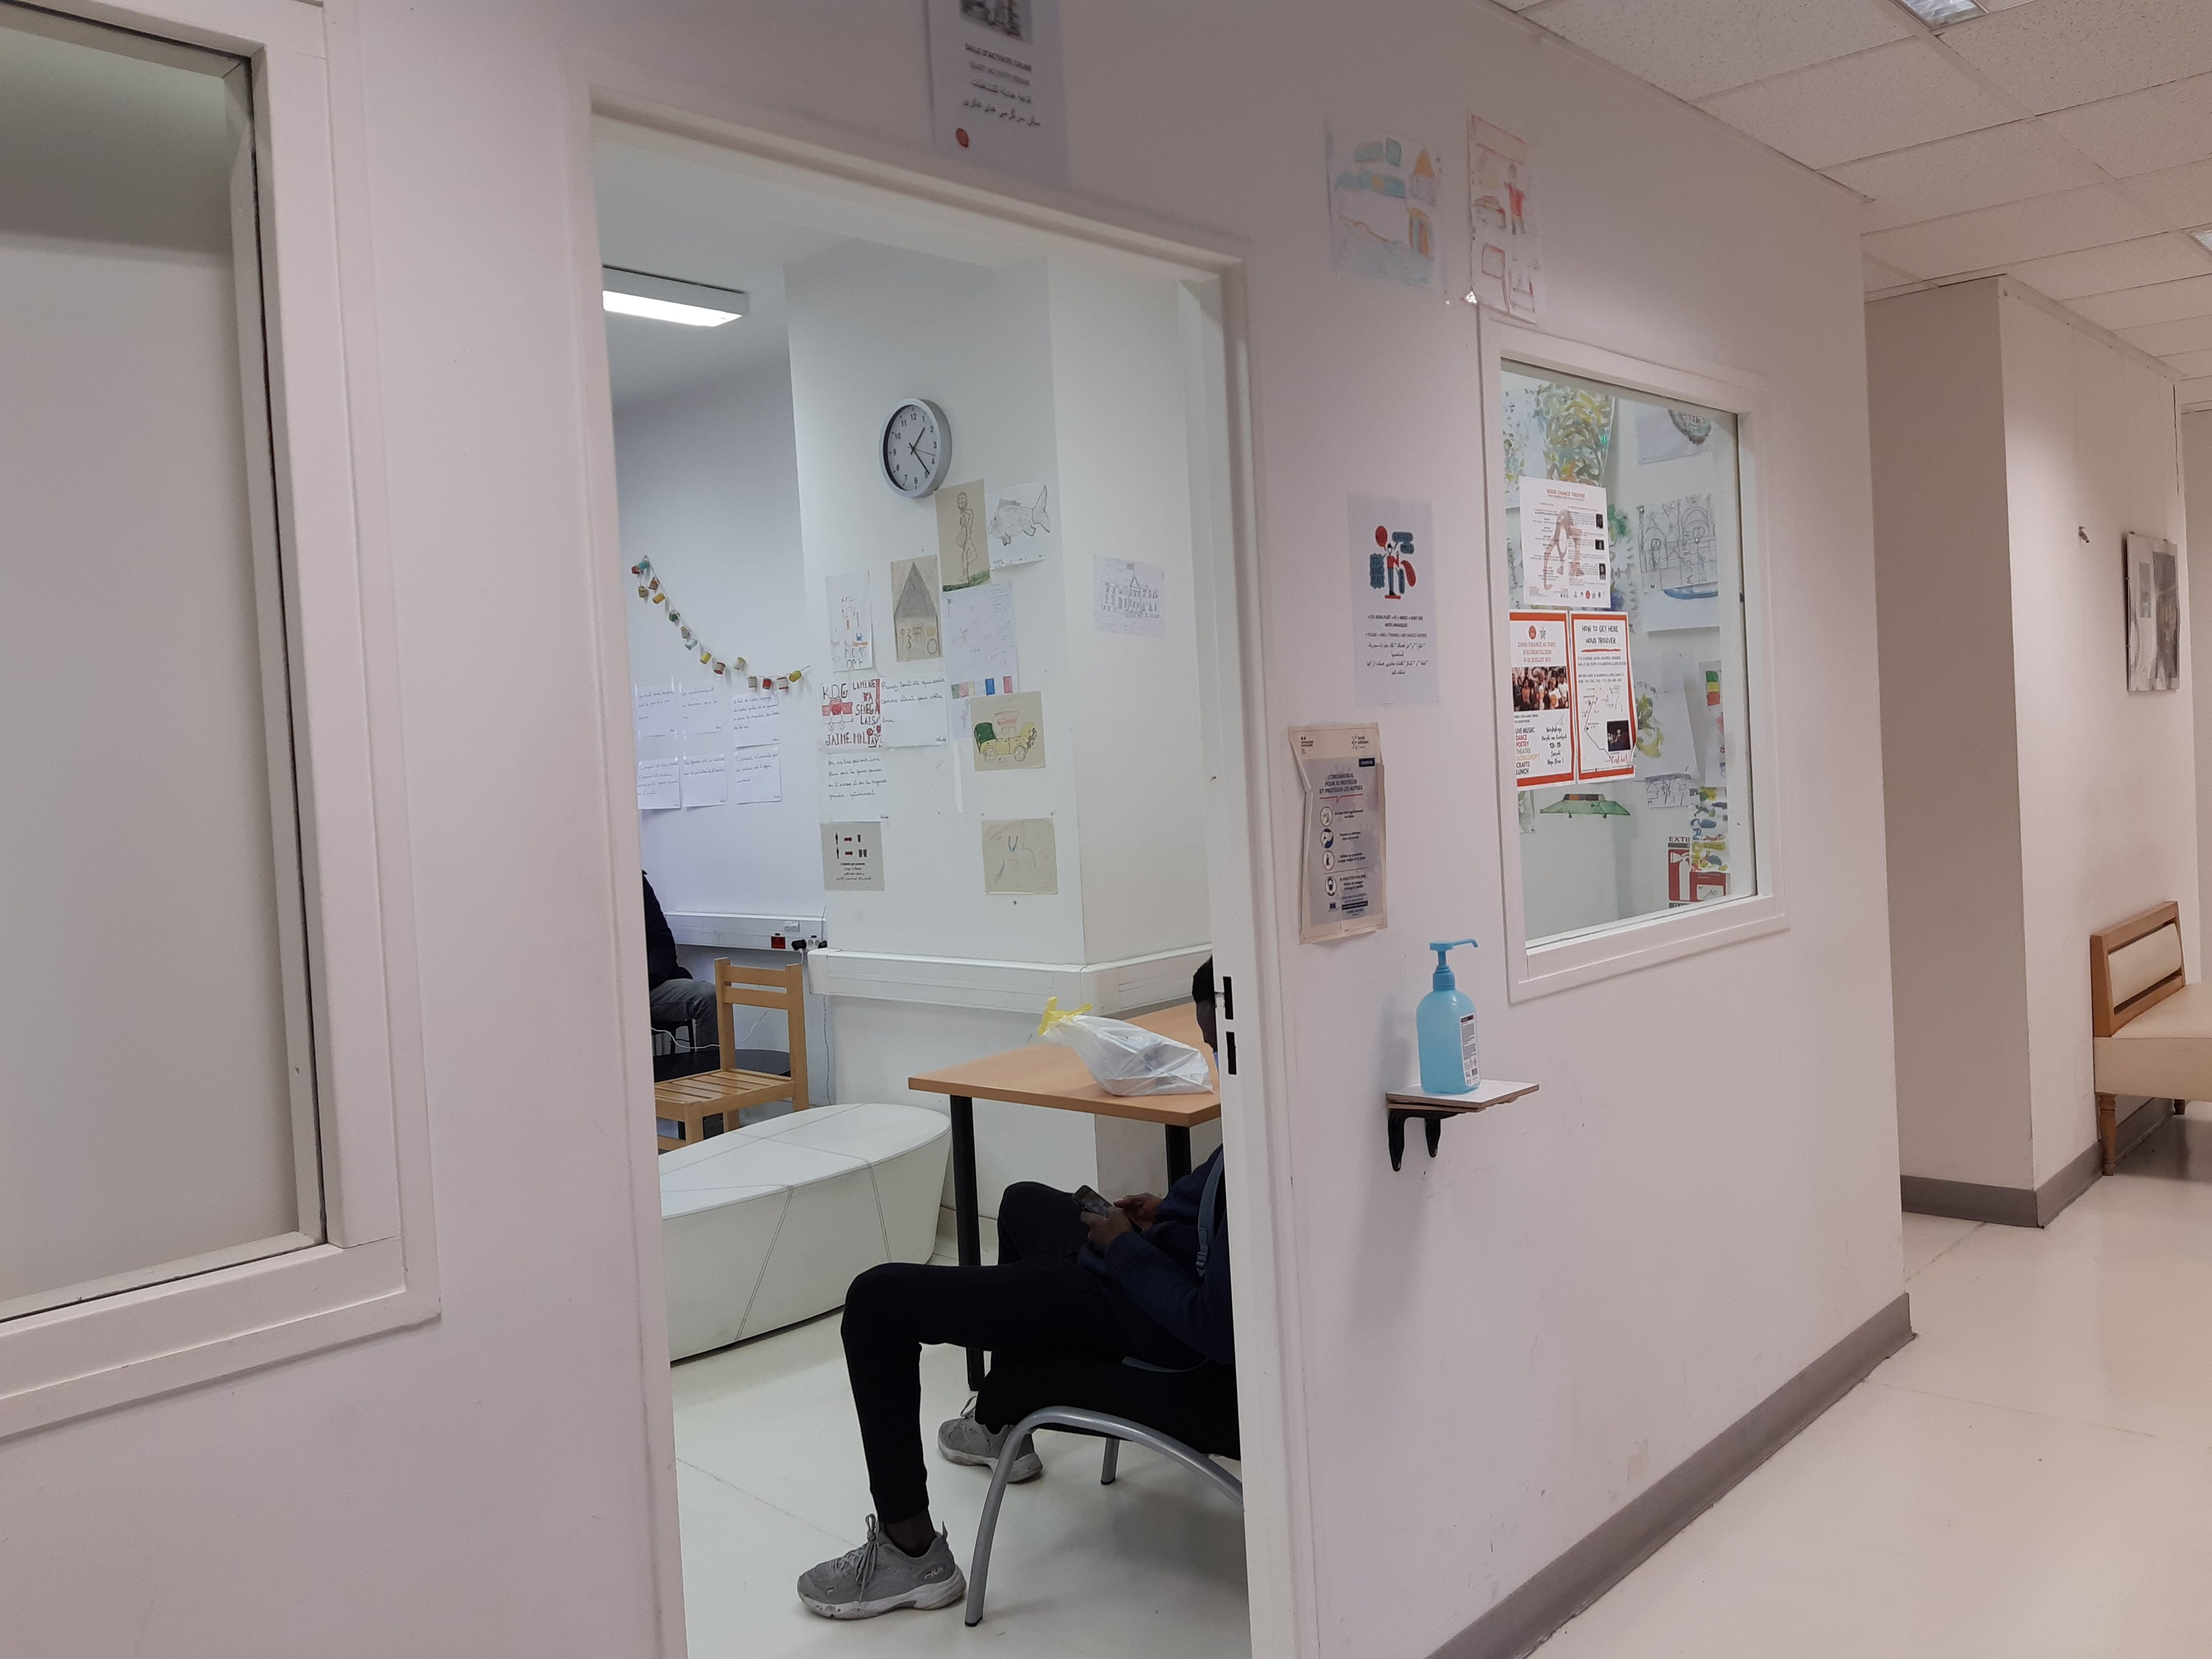 Pantin  (Seine-Saint-Denis), en novembre 2021. Ce centre d'accueil de jour géré par Médecins sans frontières a été ouvert en 2017 pour les migrants mineurs en quête de soutien ou de conseils juridiques. LP/Elsa Marnette